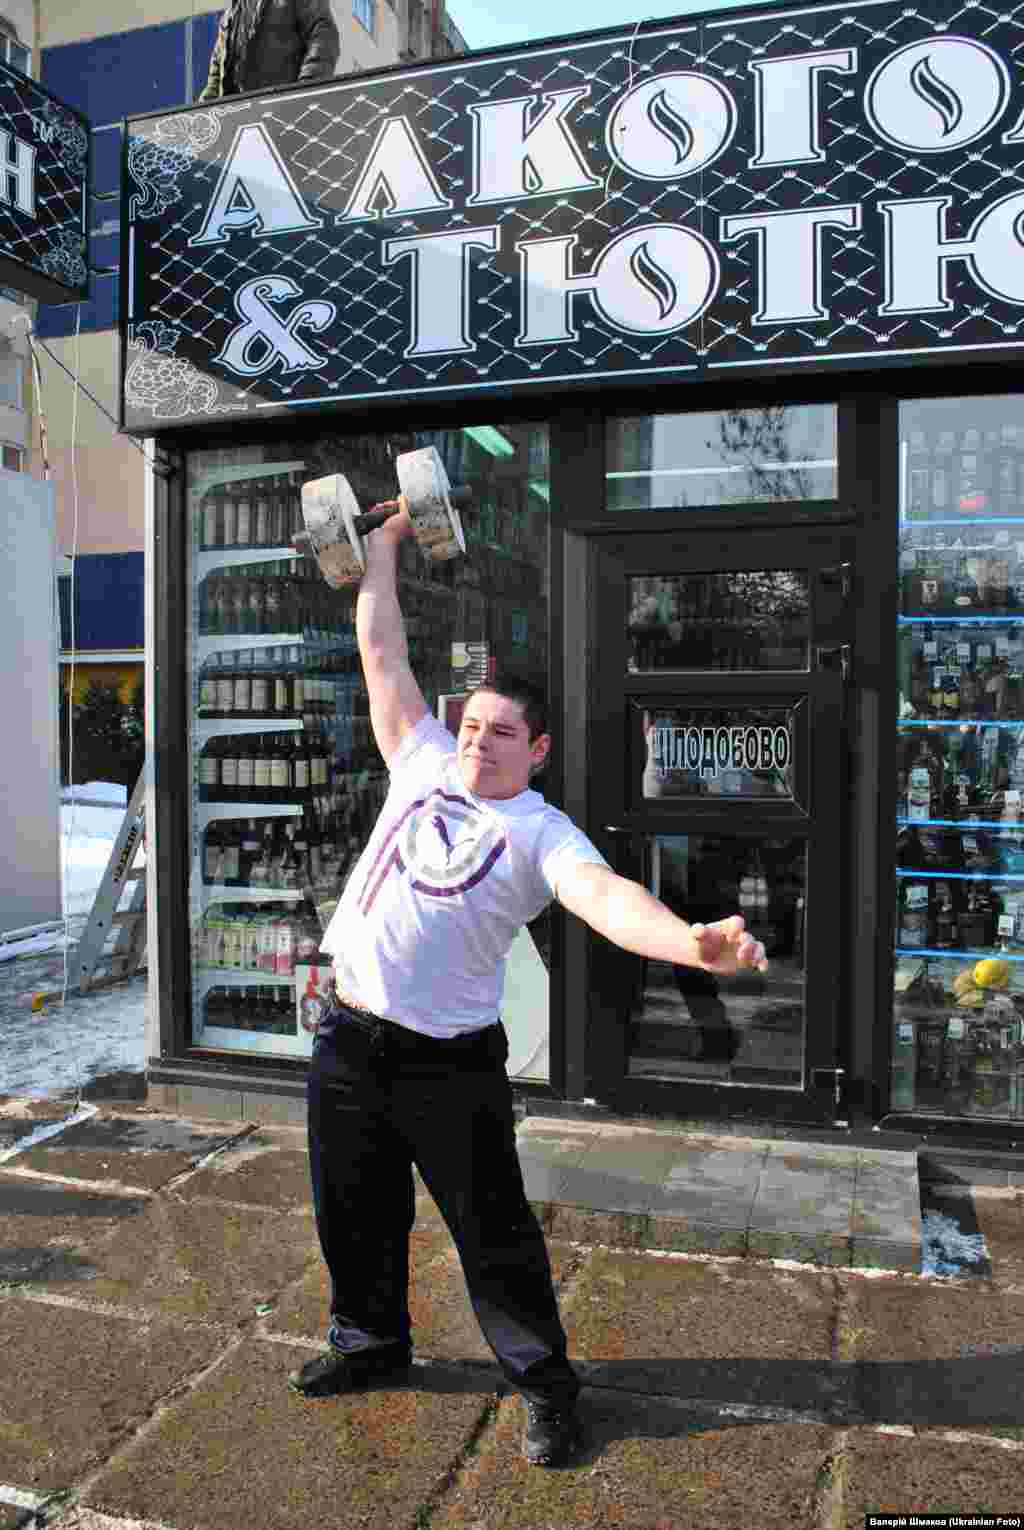 Акція &quot;Алкостоп&quot; у Львові. Активісти провели флешмоб проти незаконної реклами алкоголю. Під час флеш-мобу учасники копали мяч та піднімали гантелі безпосередньо перед кіоском з горілкою.